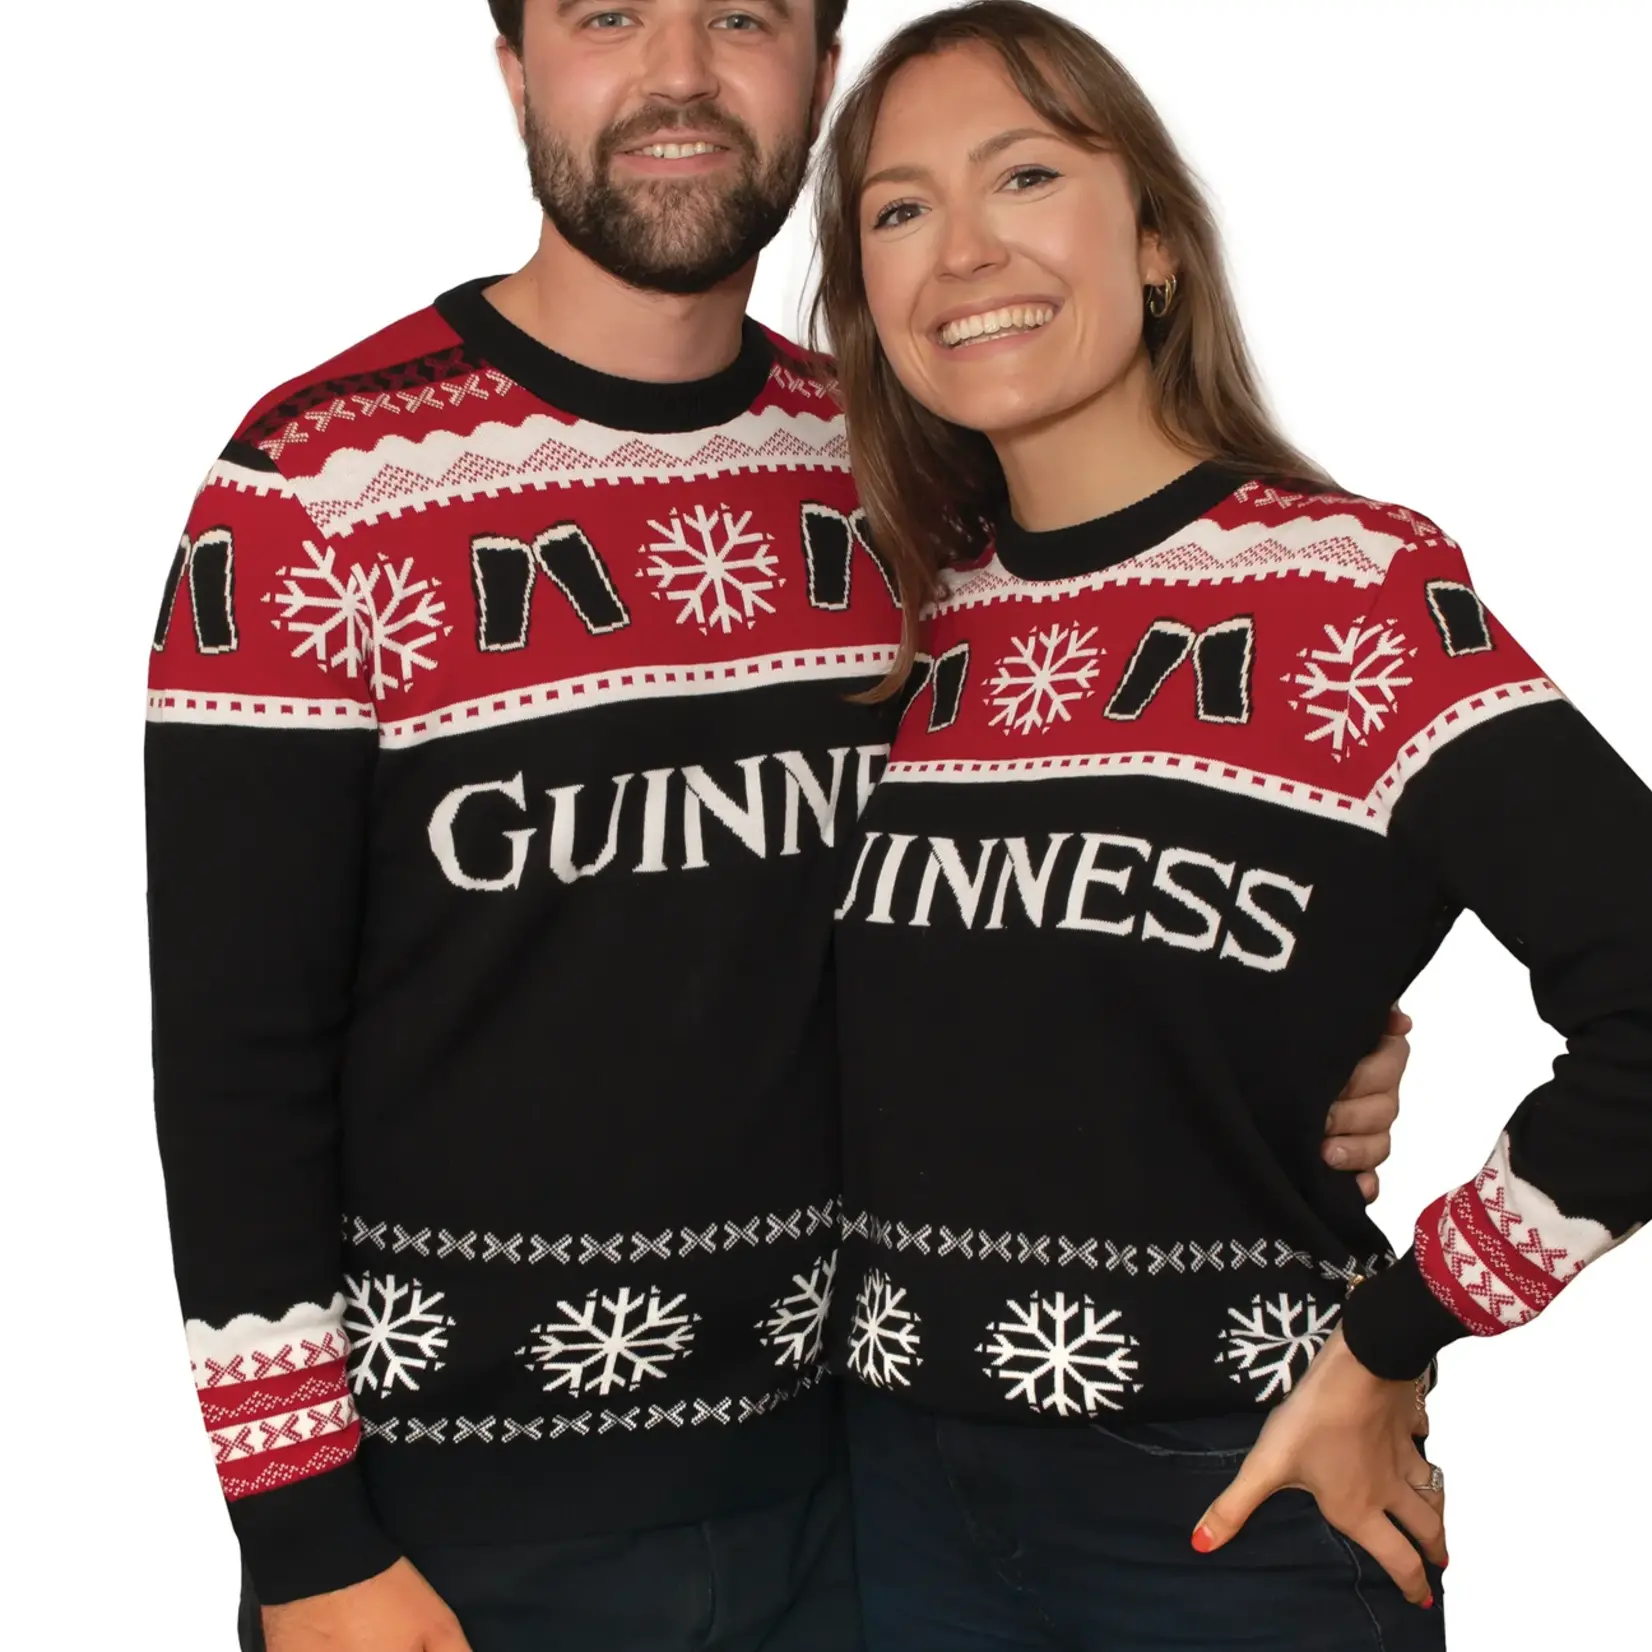 Guinness Guinness Christmas Sweater